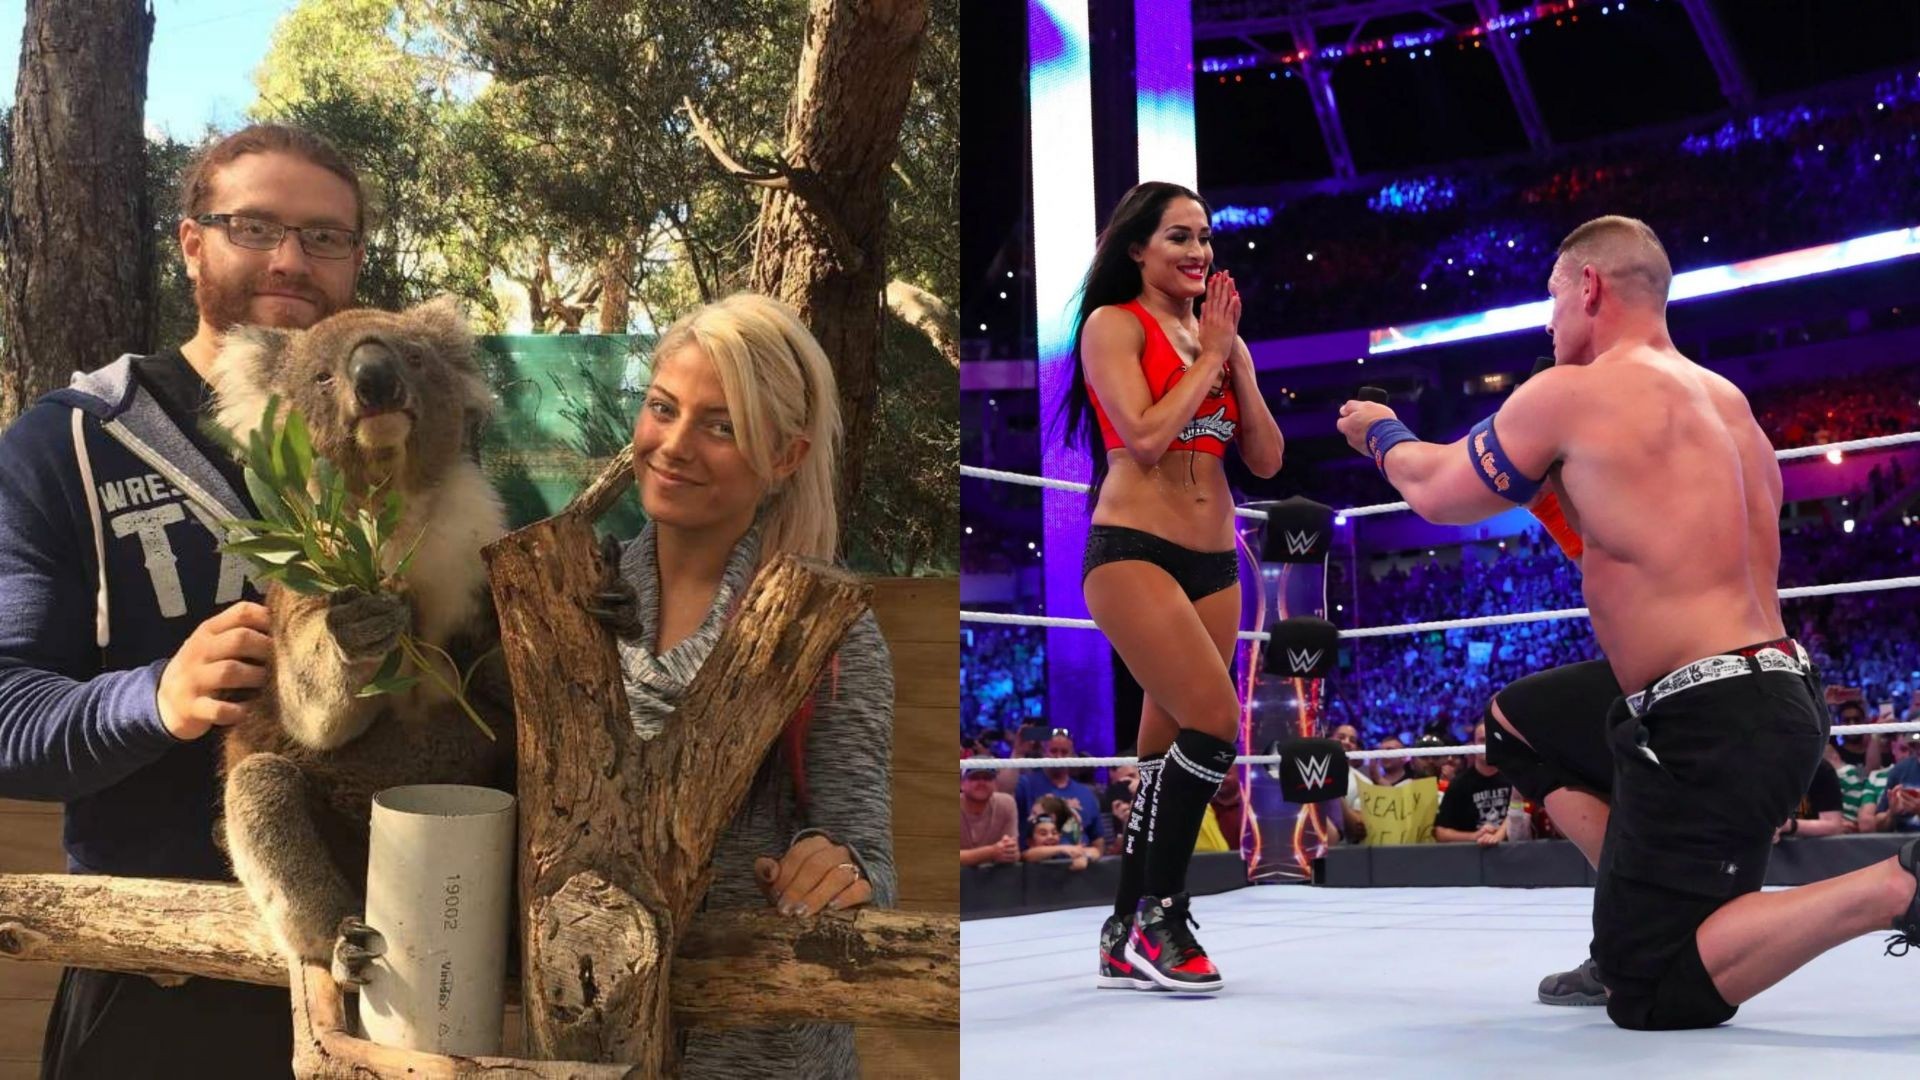 WWE Nikki Bella in Wrestling Ring Pose Wallpapers